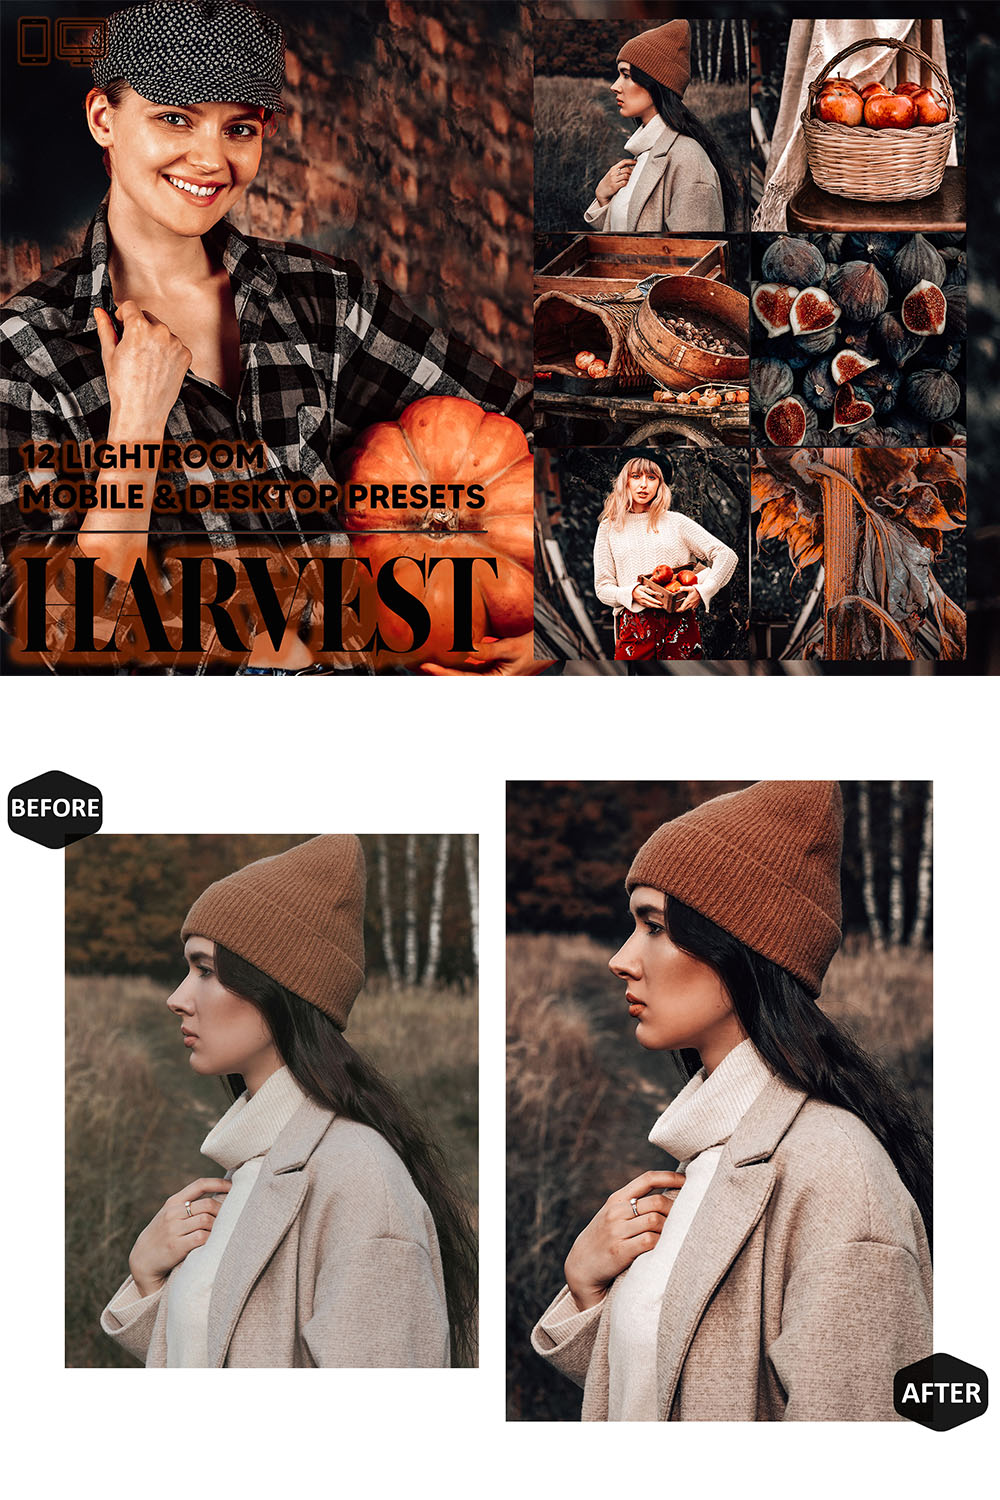 12 Harvest Lightroom Presets, Autumn Mobile Preset, Moody Fall Desktop, Lifestyle Portrait Theme For Instagram LR Filter DNG Orange Village pinterest preview image.